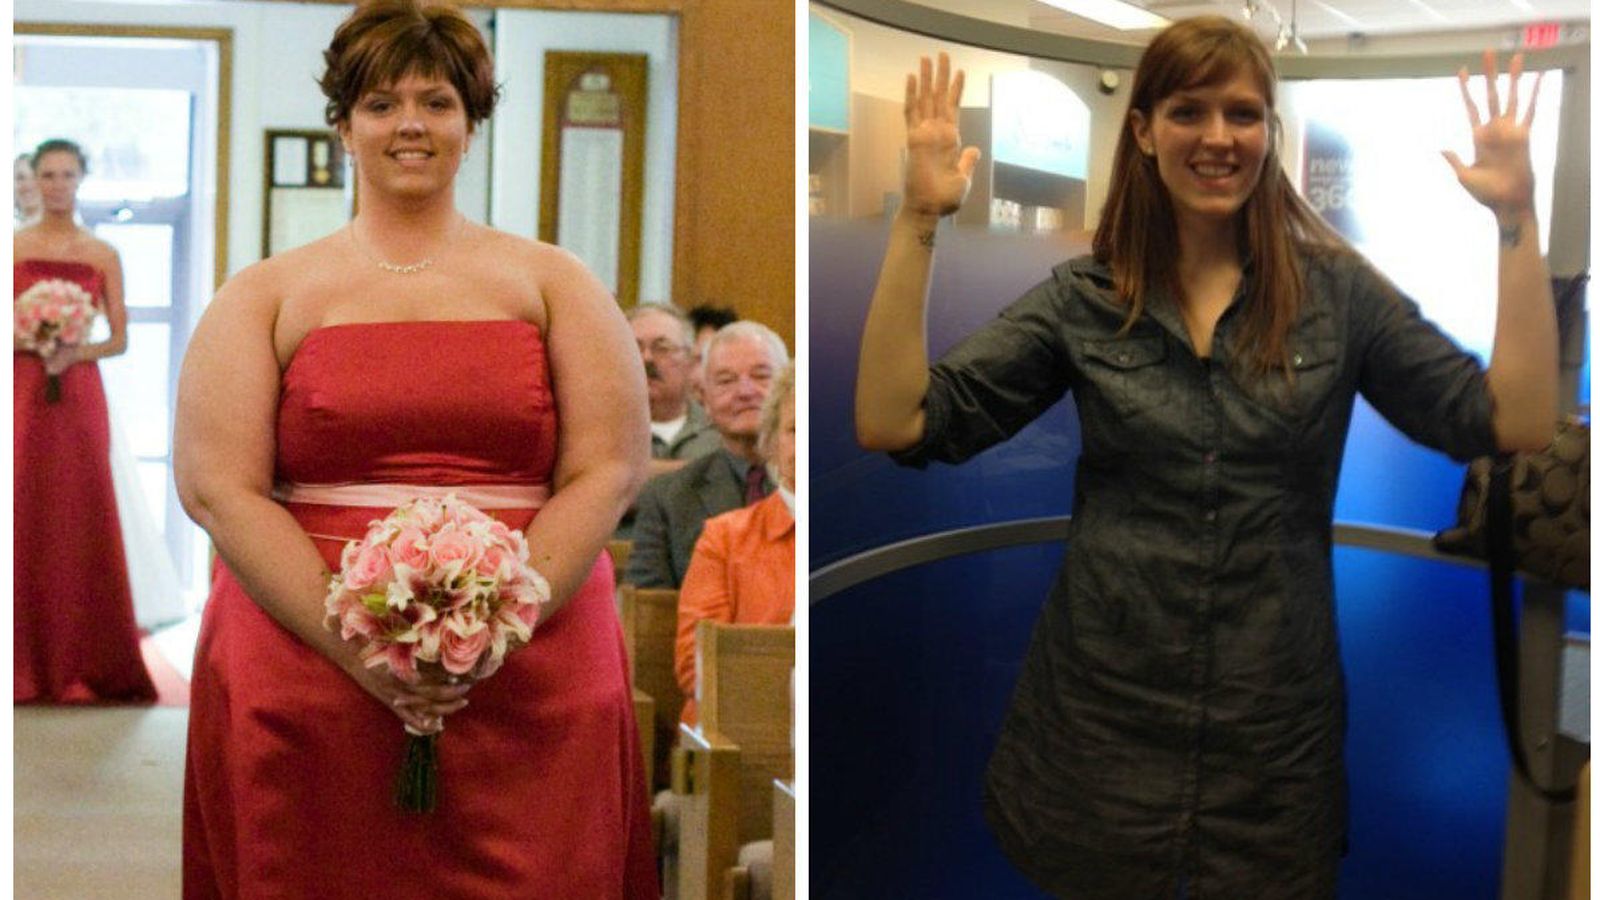 Foto: Pese a las recaídas, Brooke Birmingham adelgazó 67 kilos. Conoce su historia y la de otros muchos triunfadores en la carrera por perder peso. (brookenotonadiet.com)